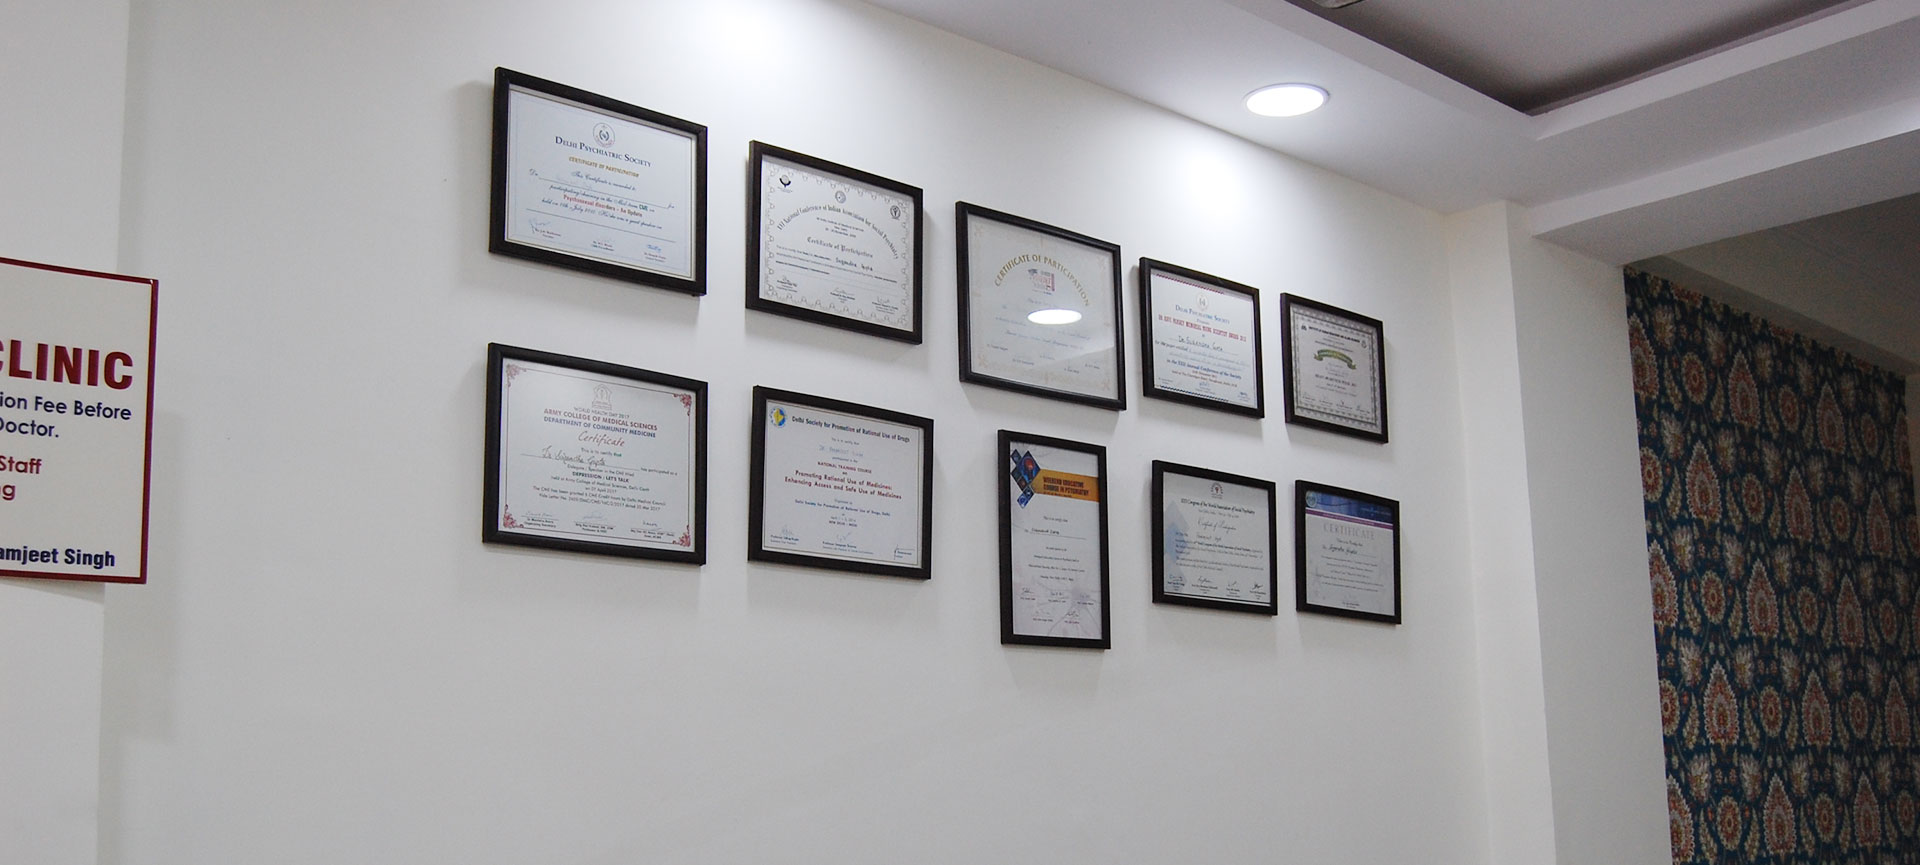 Delhimindclinic Rewards Collection